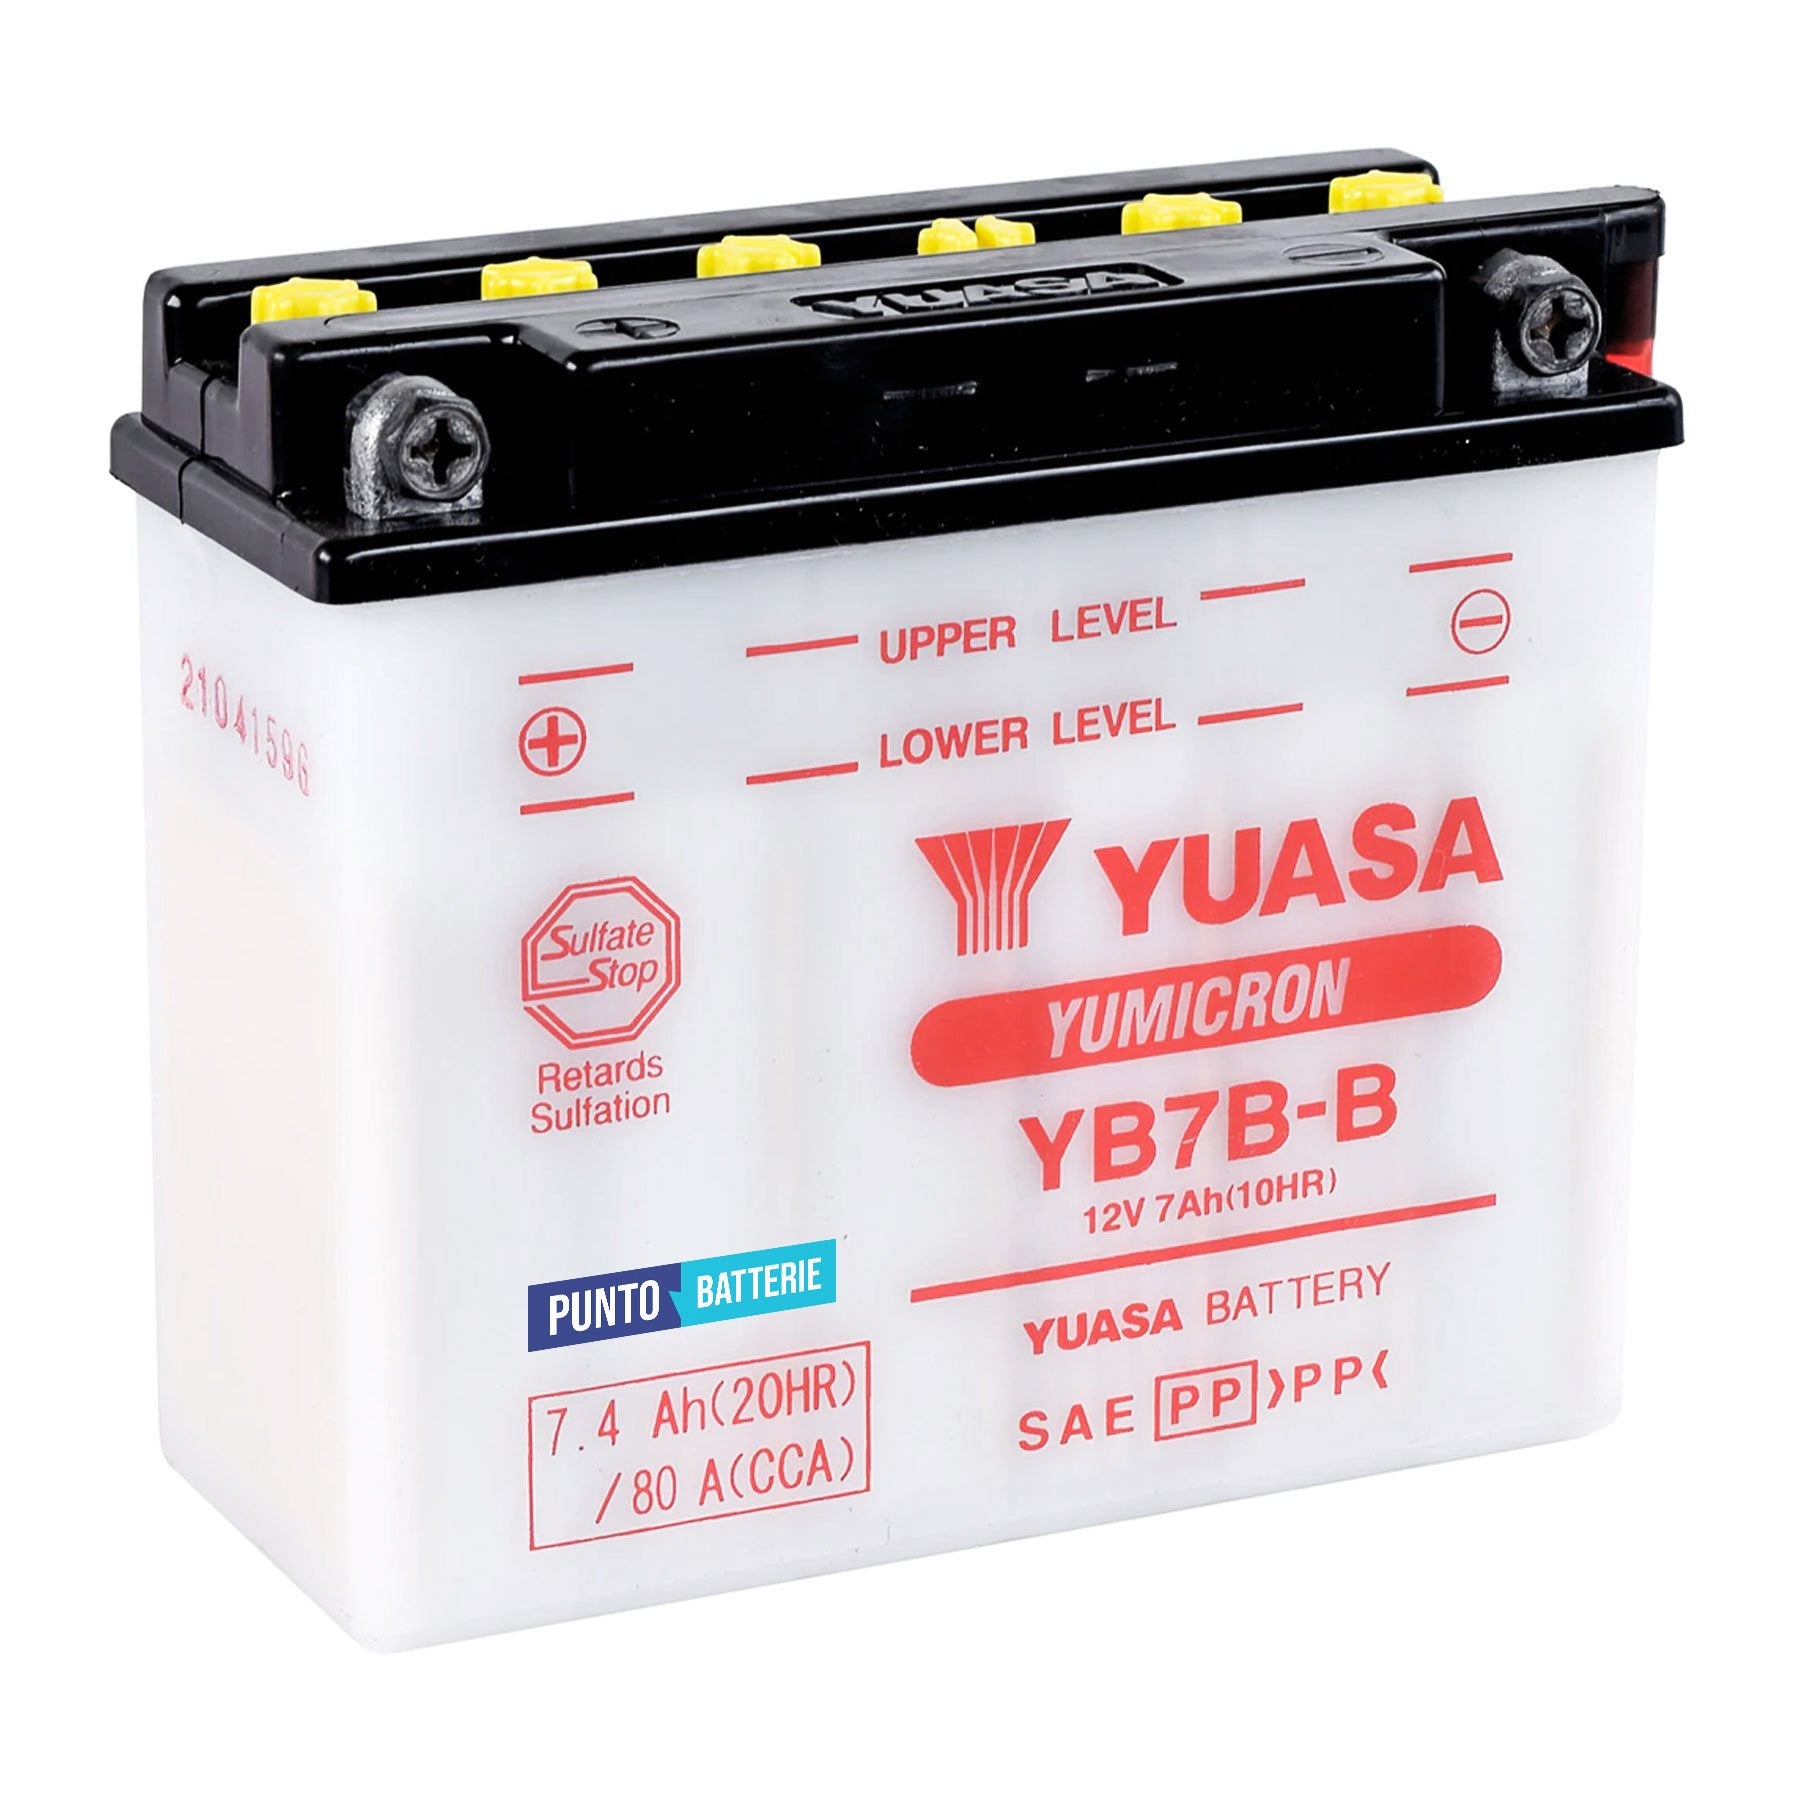 Batteria originale Yuasa YuMicron YB7B-B, dimensioni 152 x 61 x 132, polo positivo a sinistra, 12 volt, 7 amperora, 80 ampere. Batteria per moto, scooter e powersport.